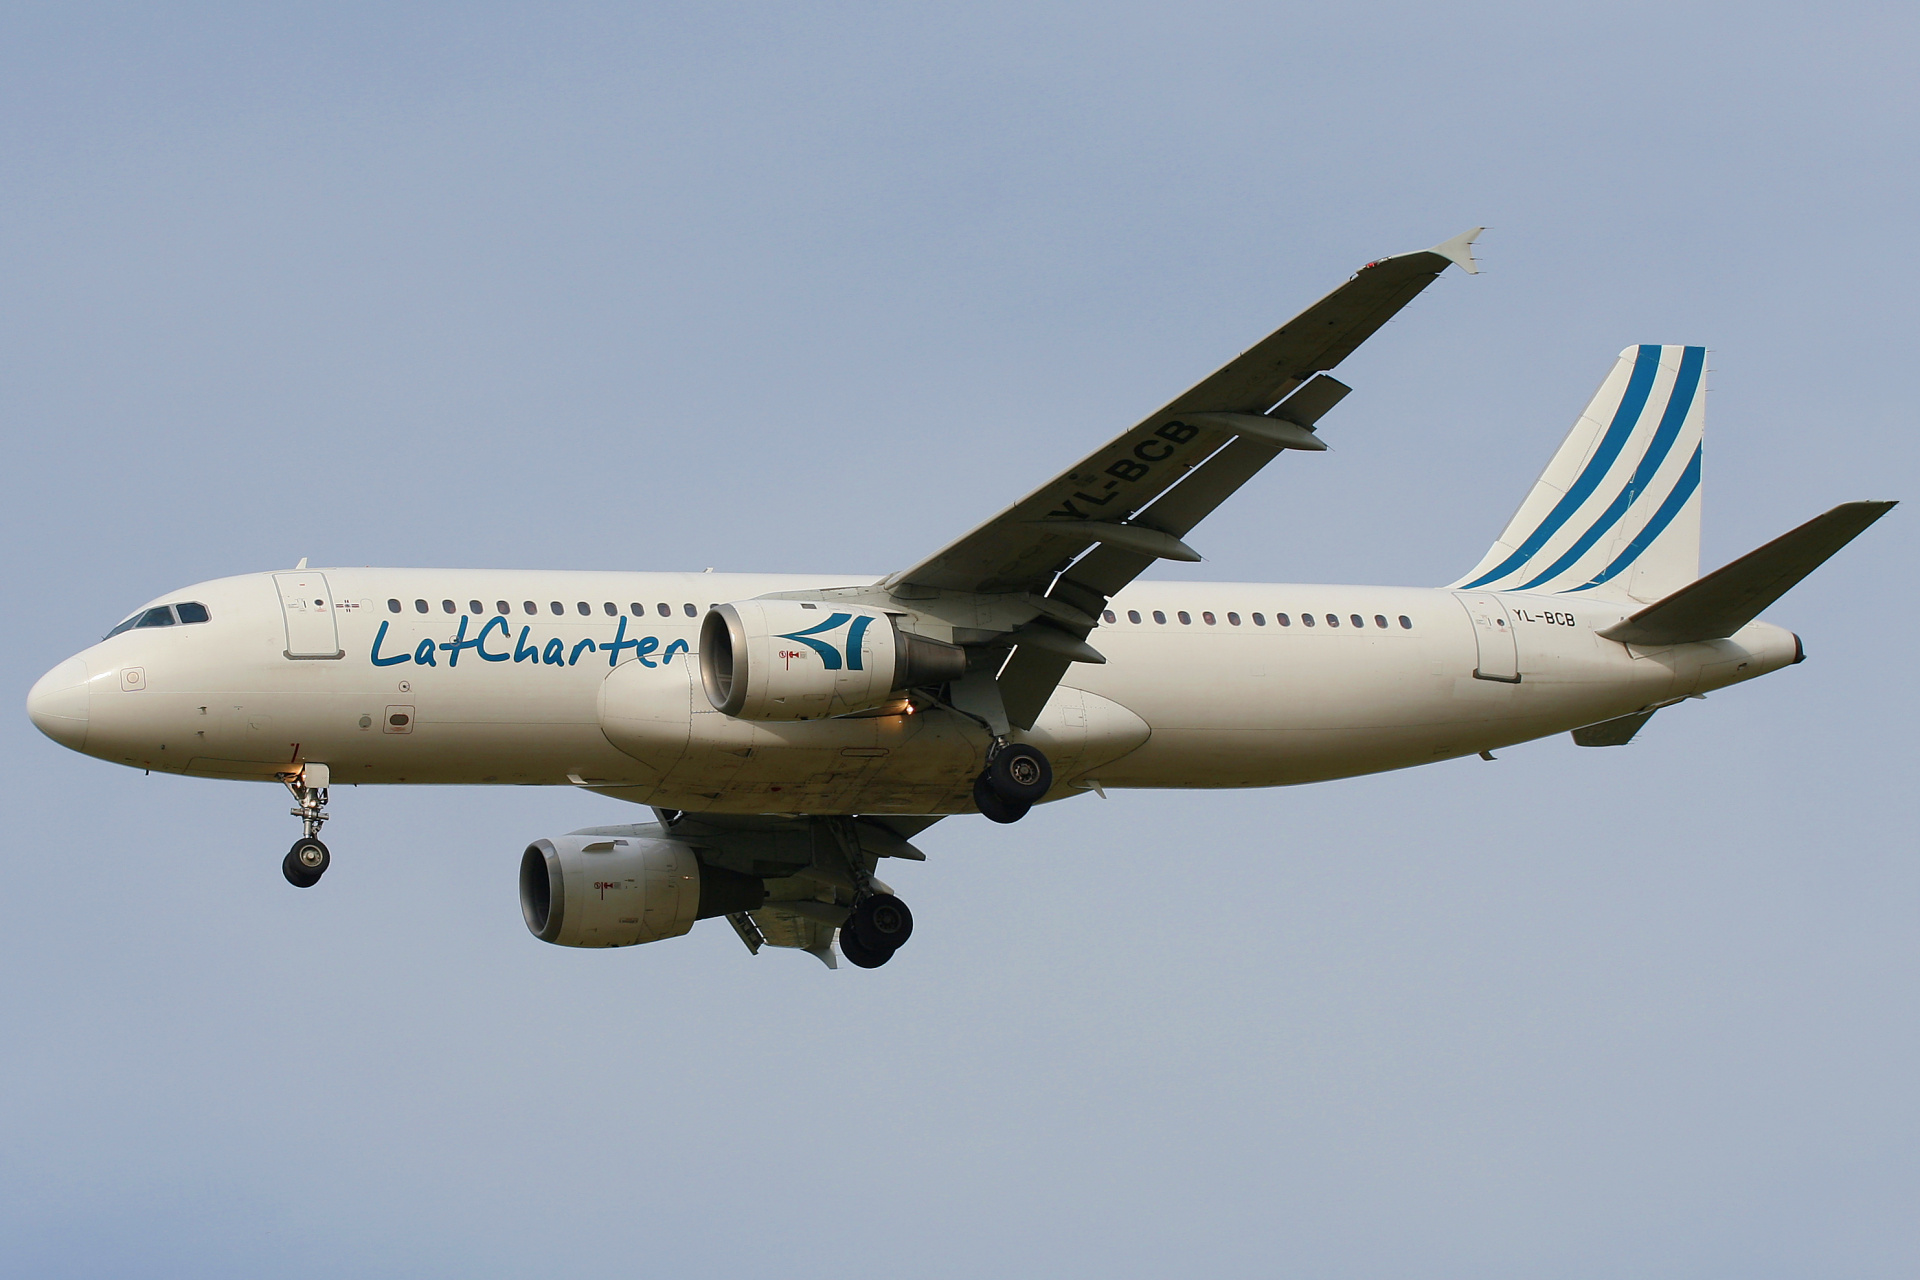 YL-BCB, Lat Charter (Aircraft » EPWA Spotting » Airbus A320-200)